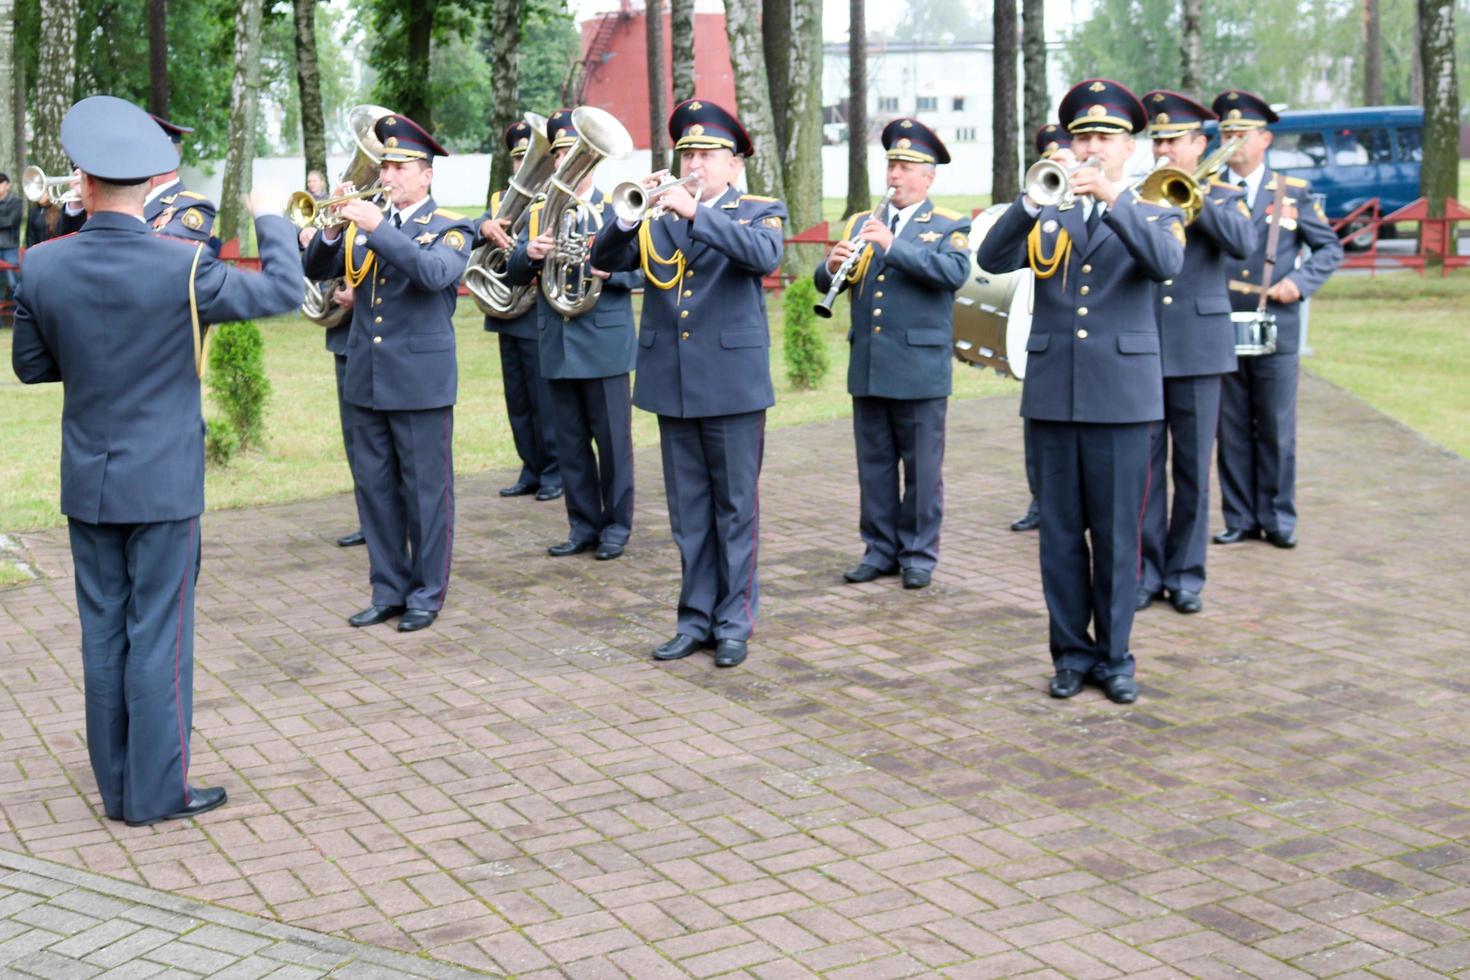 banda militar militar de hombres con trompetas e instrumentos de viento celebran el honor en el día de la victoria moscú, rusia, 05.09.2018 foto